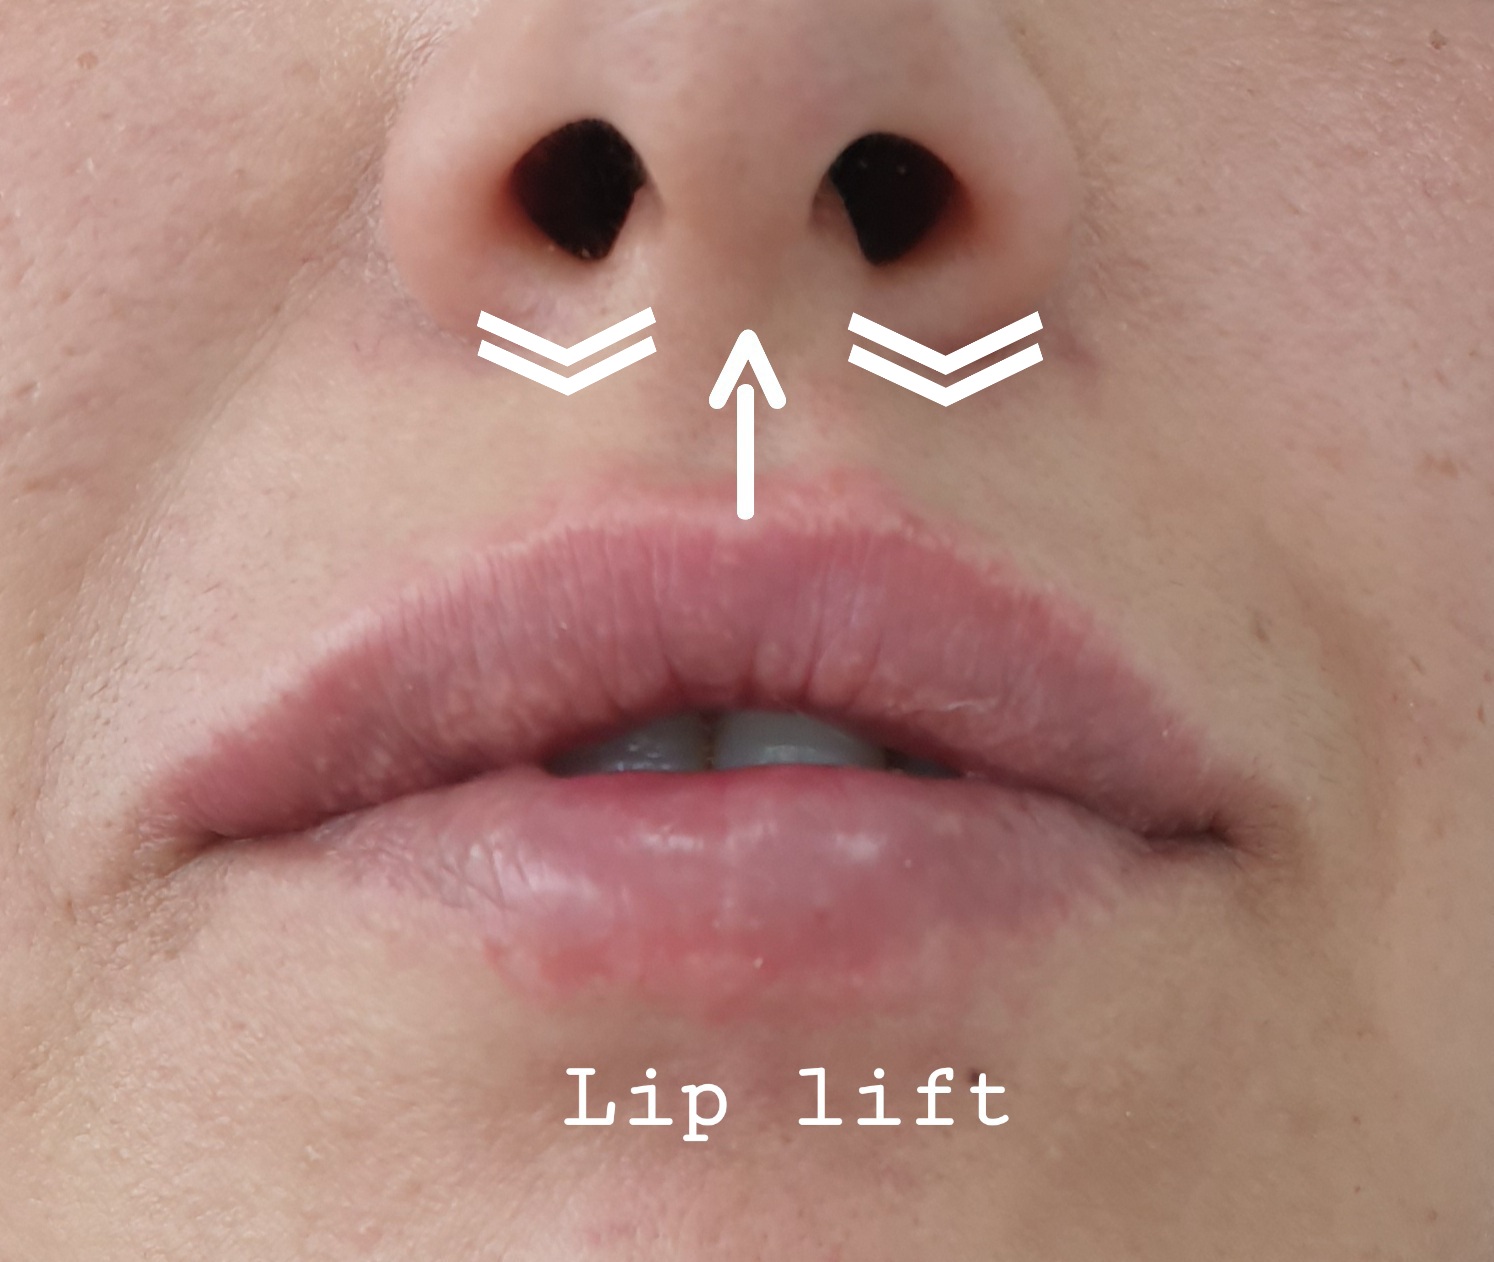 Lip lift - bullhorn lip lift